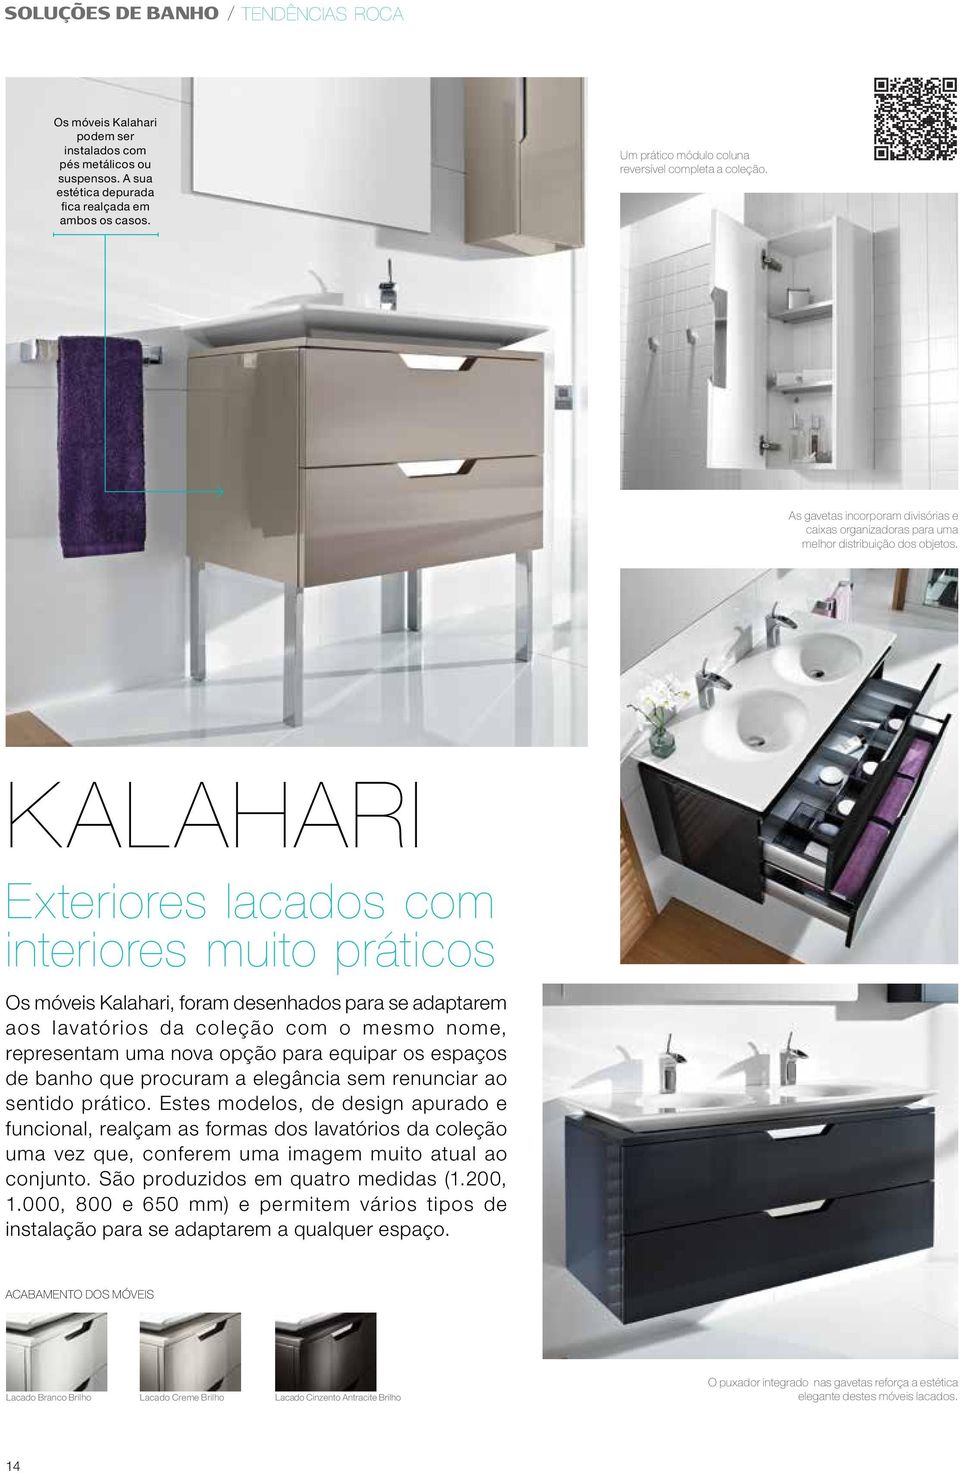 KALAHARI Exteriores lacados com interiores muito práticos Os móveis Kalahari, foram desenhados para se adaptarem aos lavatórios da coleção com o mesmo nome, representam uma nova opção para equipar os